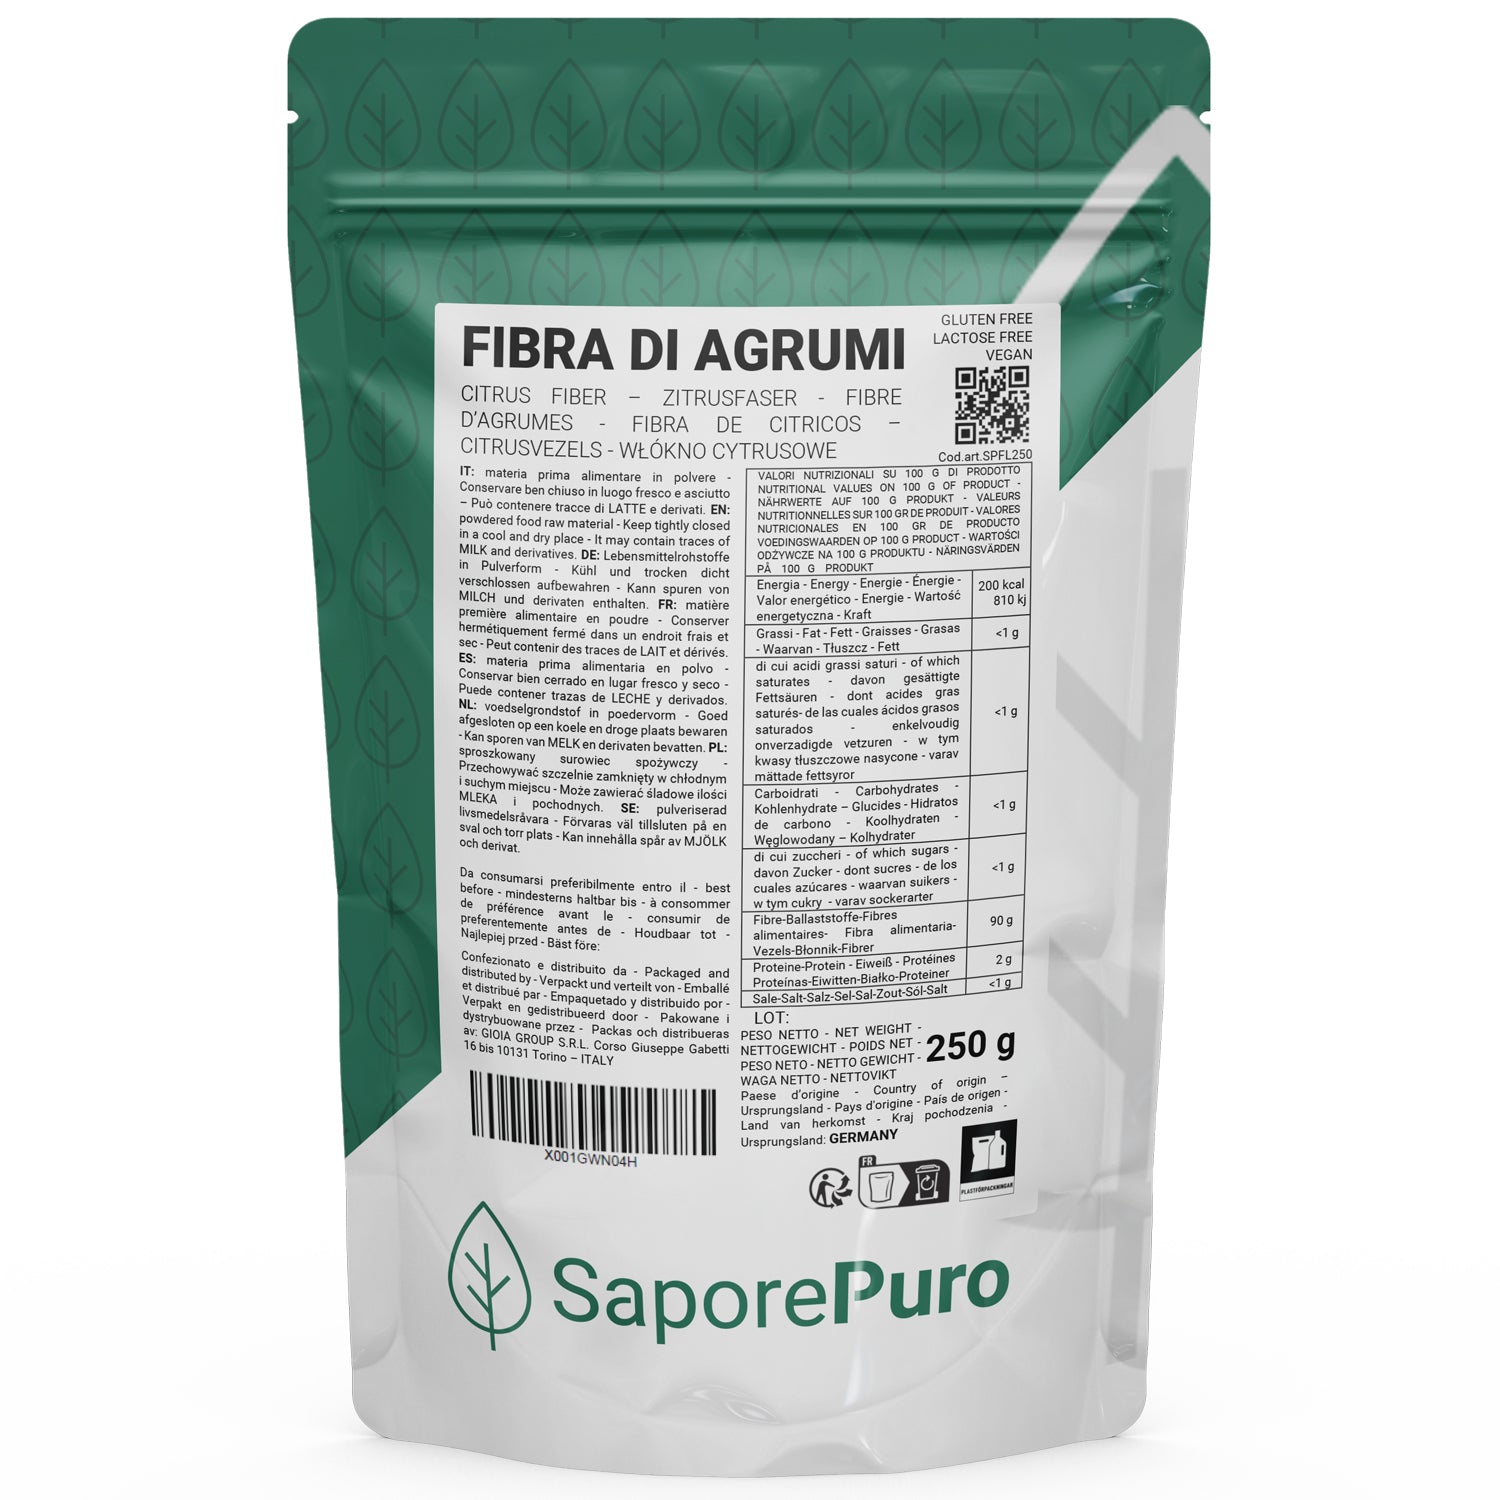 Fibra di Agrumi - 250gr - Addensante Clean Label per Gelato senza "E" - SaporePuro